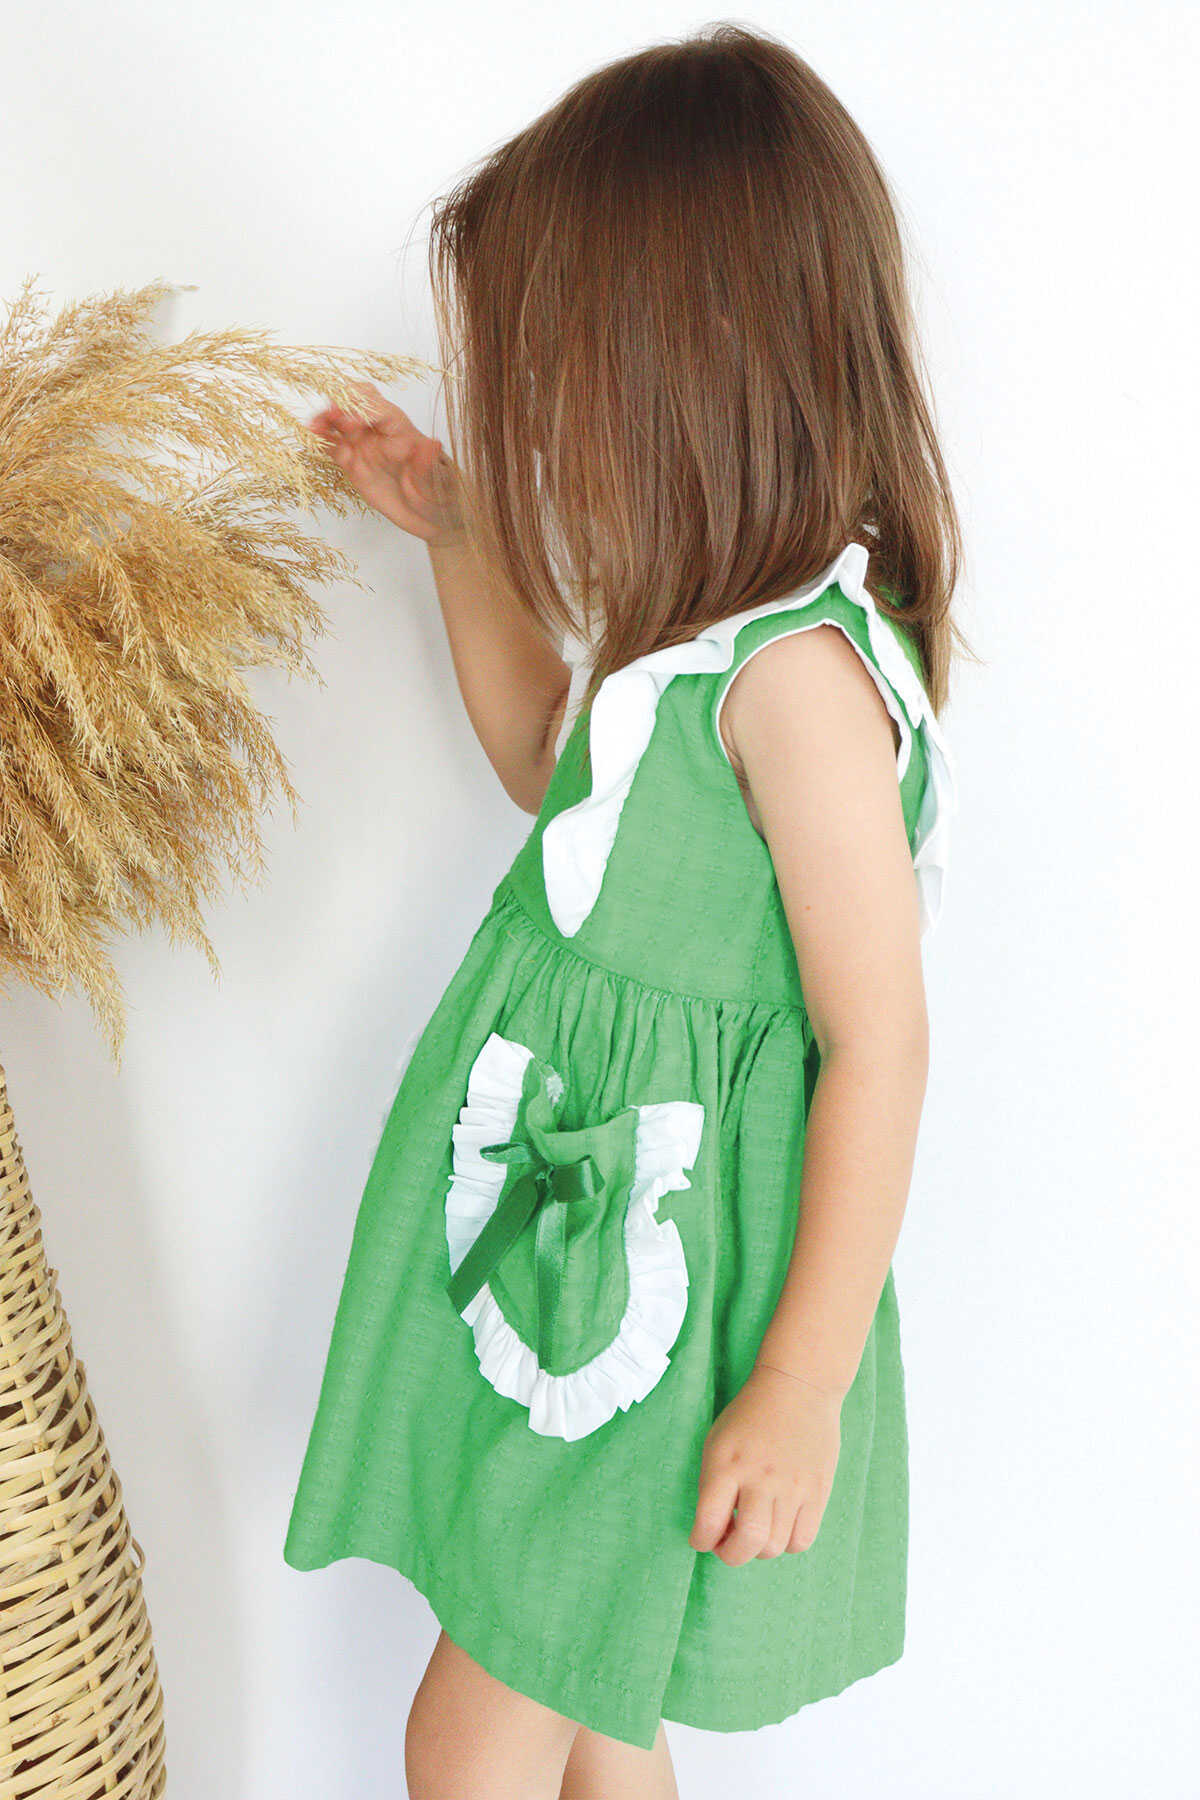 Benetton Yeşil Fırfırlı ve Cep Detaylı Kız Çocuk Elbise